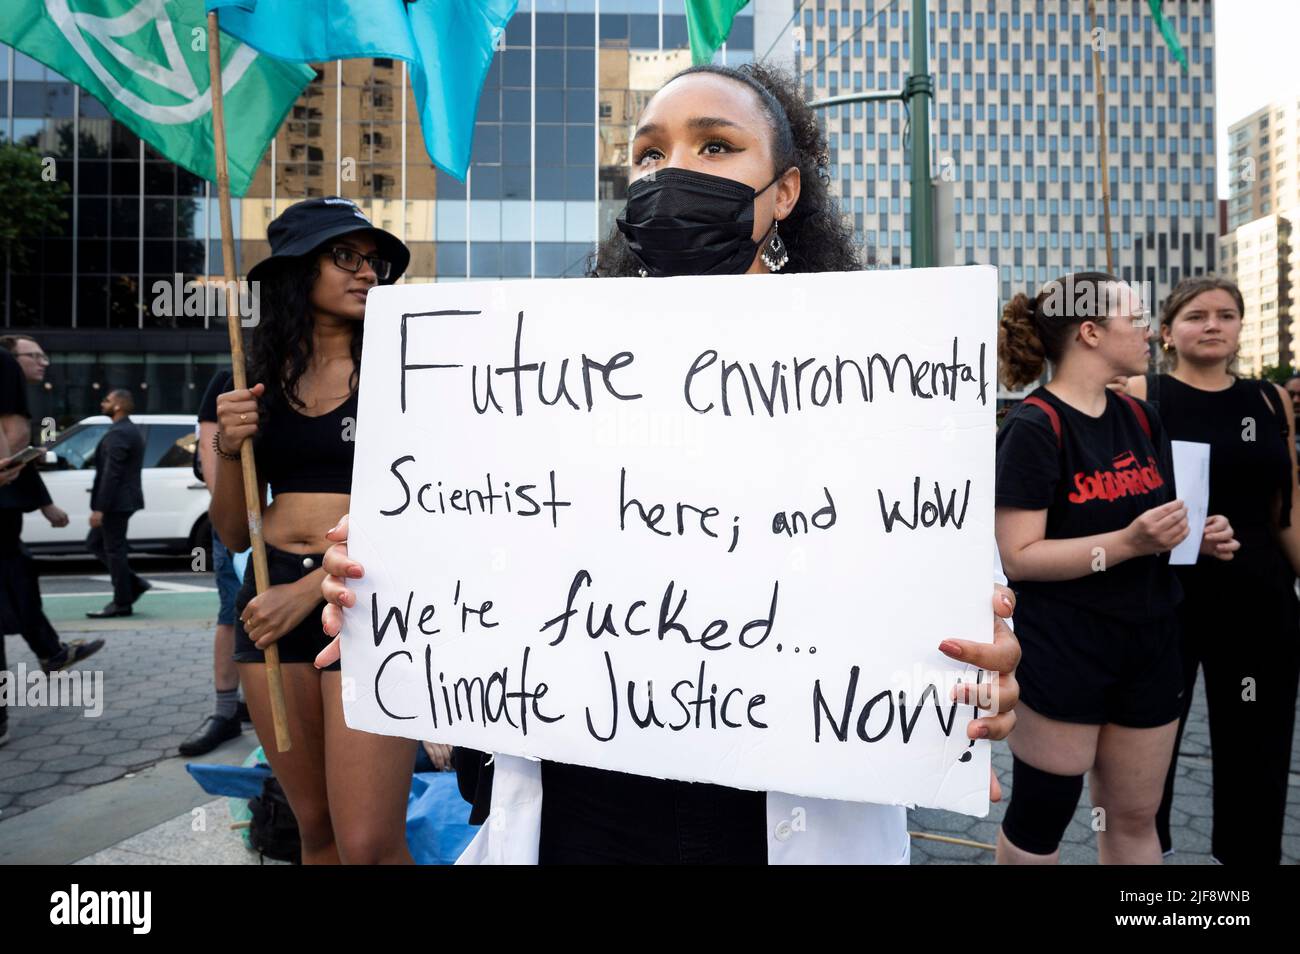 30. Juni 2022, New York City, New York, USA: Frau mit einem Schild, das sagt: "Futue-Umweltwissenschaftler hier; und wow, wir sind f**k'ed. Klimagerechtigkeit jetzt!“ Bei einer Klimakundgebung, die als Reaktion auf die Entscheidung des Obersten Gerichtshofs zu Beginn des Tages stattfand, die die Fähigkeit der Umweltschutzbehörde (EPA) eindämmen sollte, CO2-Emissionen zu regulieren. (Bild: © Michael Brochstein/ZUMA Press Wire) Stockfoto